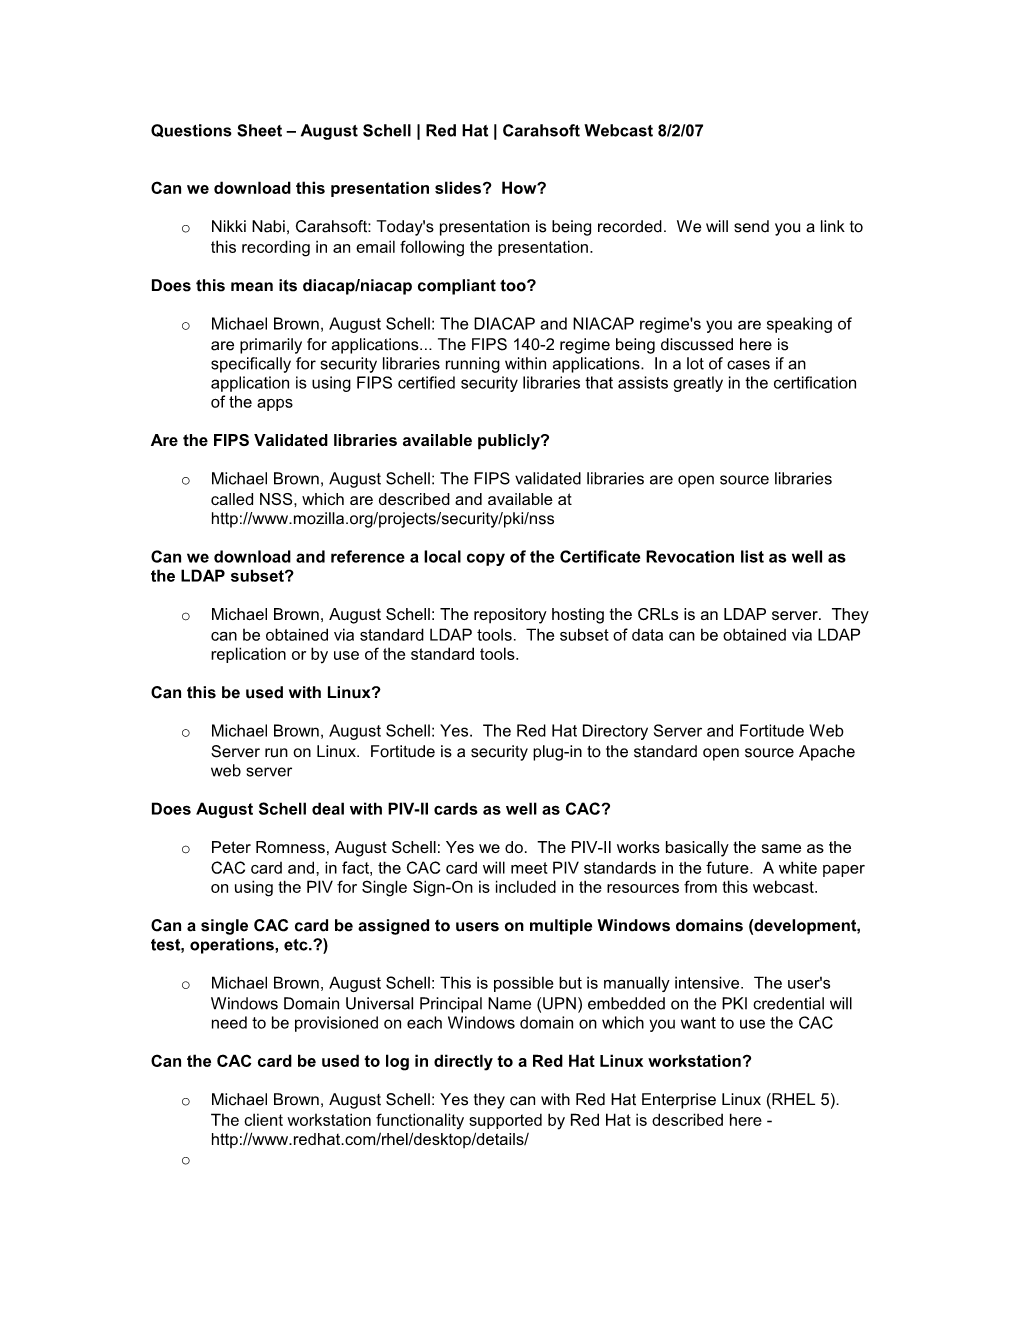 FAQ Sheet August Schell Red Hat Carahsoft Webcast 8/2/07